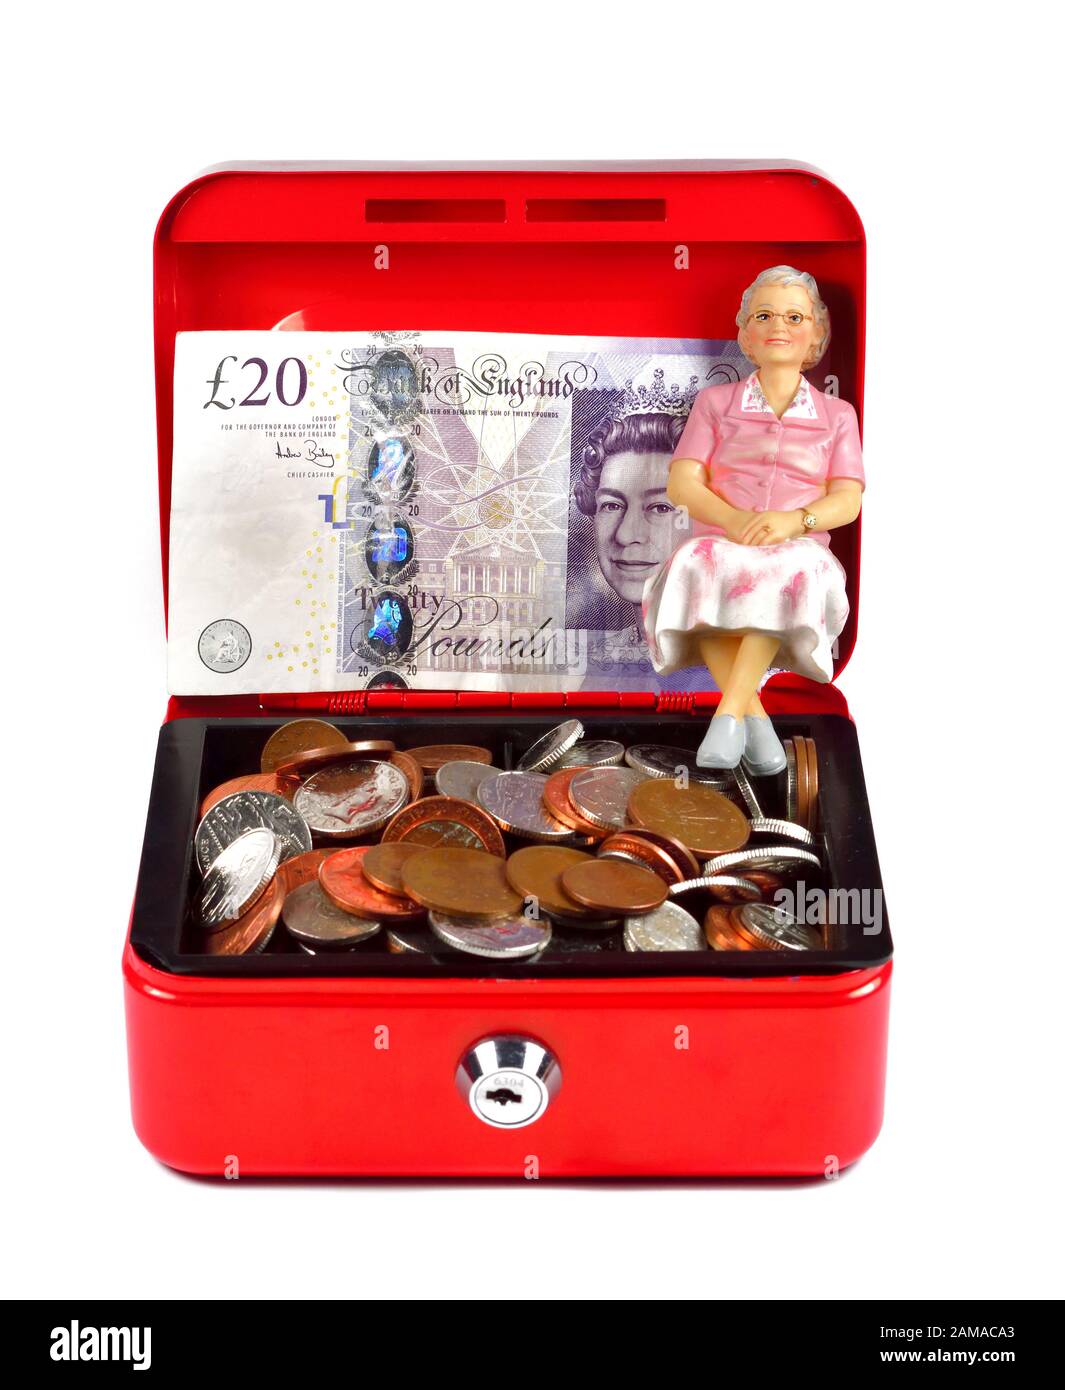 Une seule femme pensionnée figurine assise dans une caisse rouge, concept d'épargne-retraite Banque D'Images